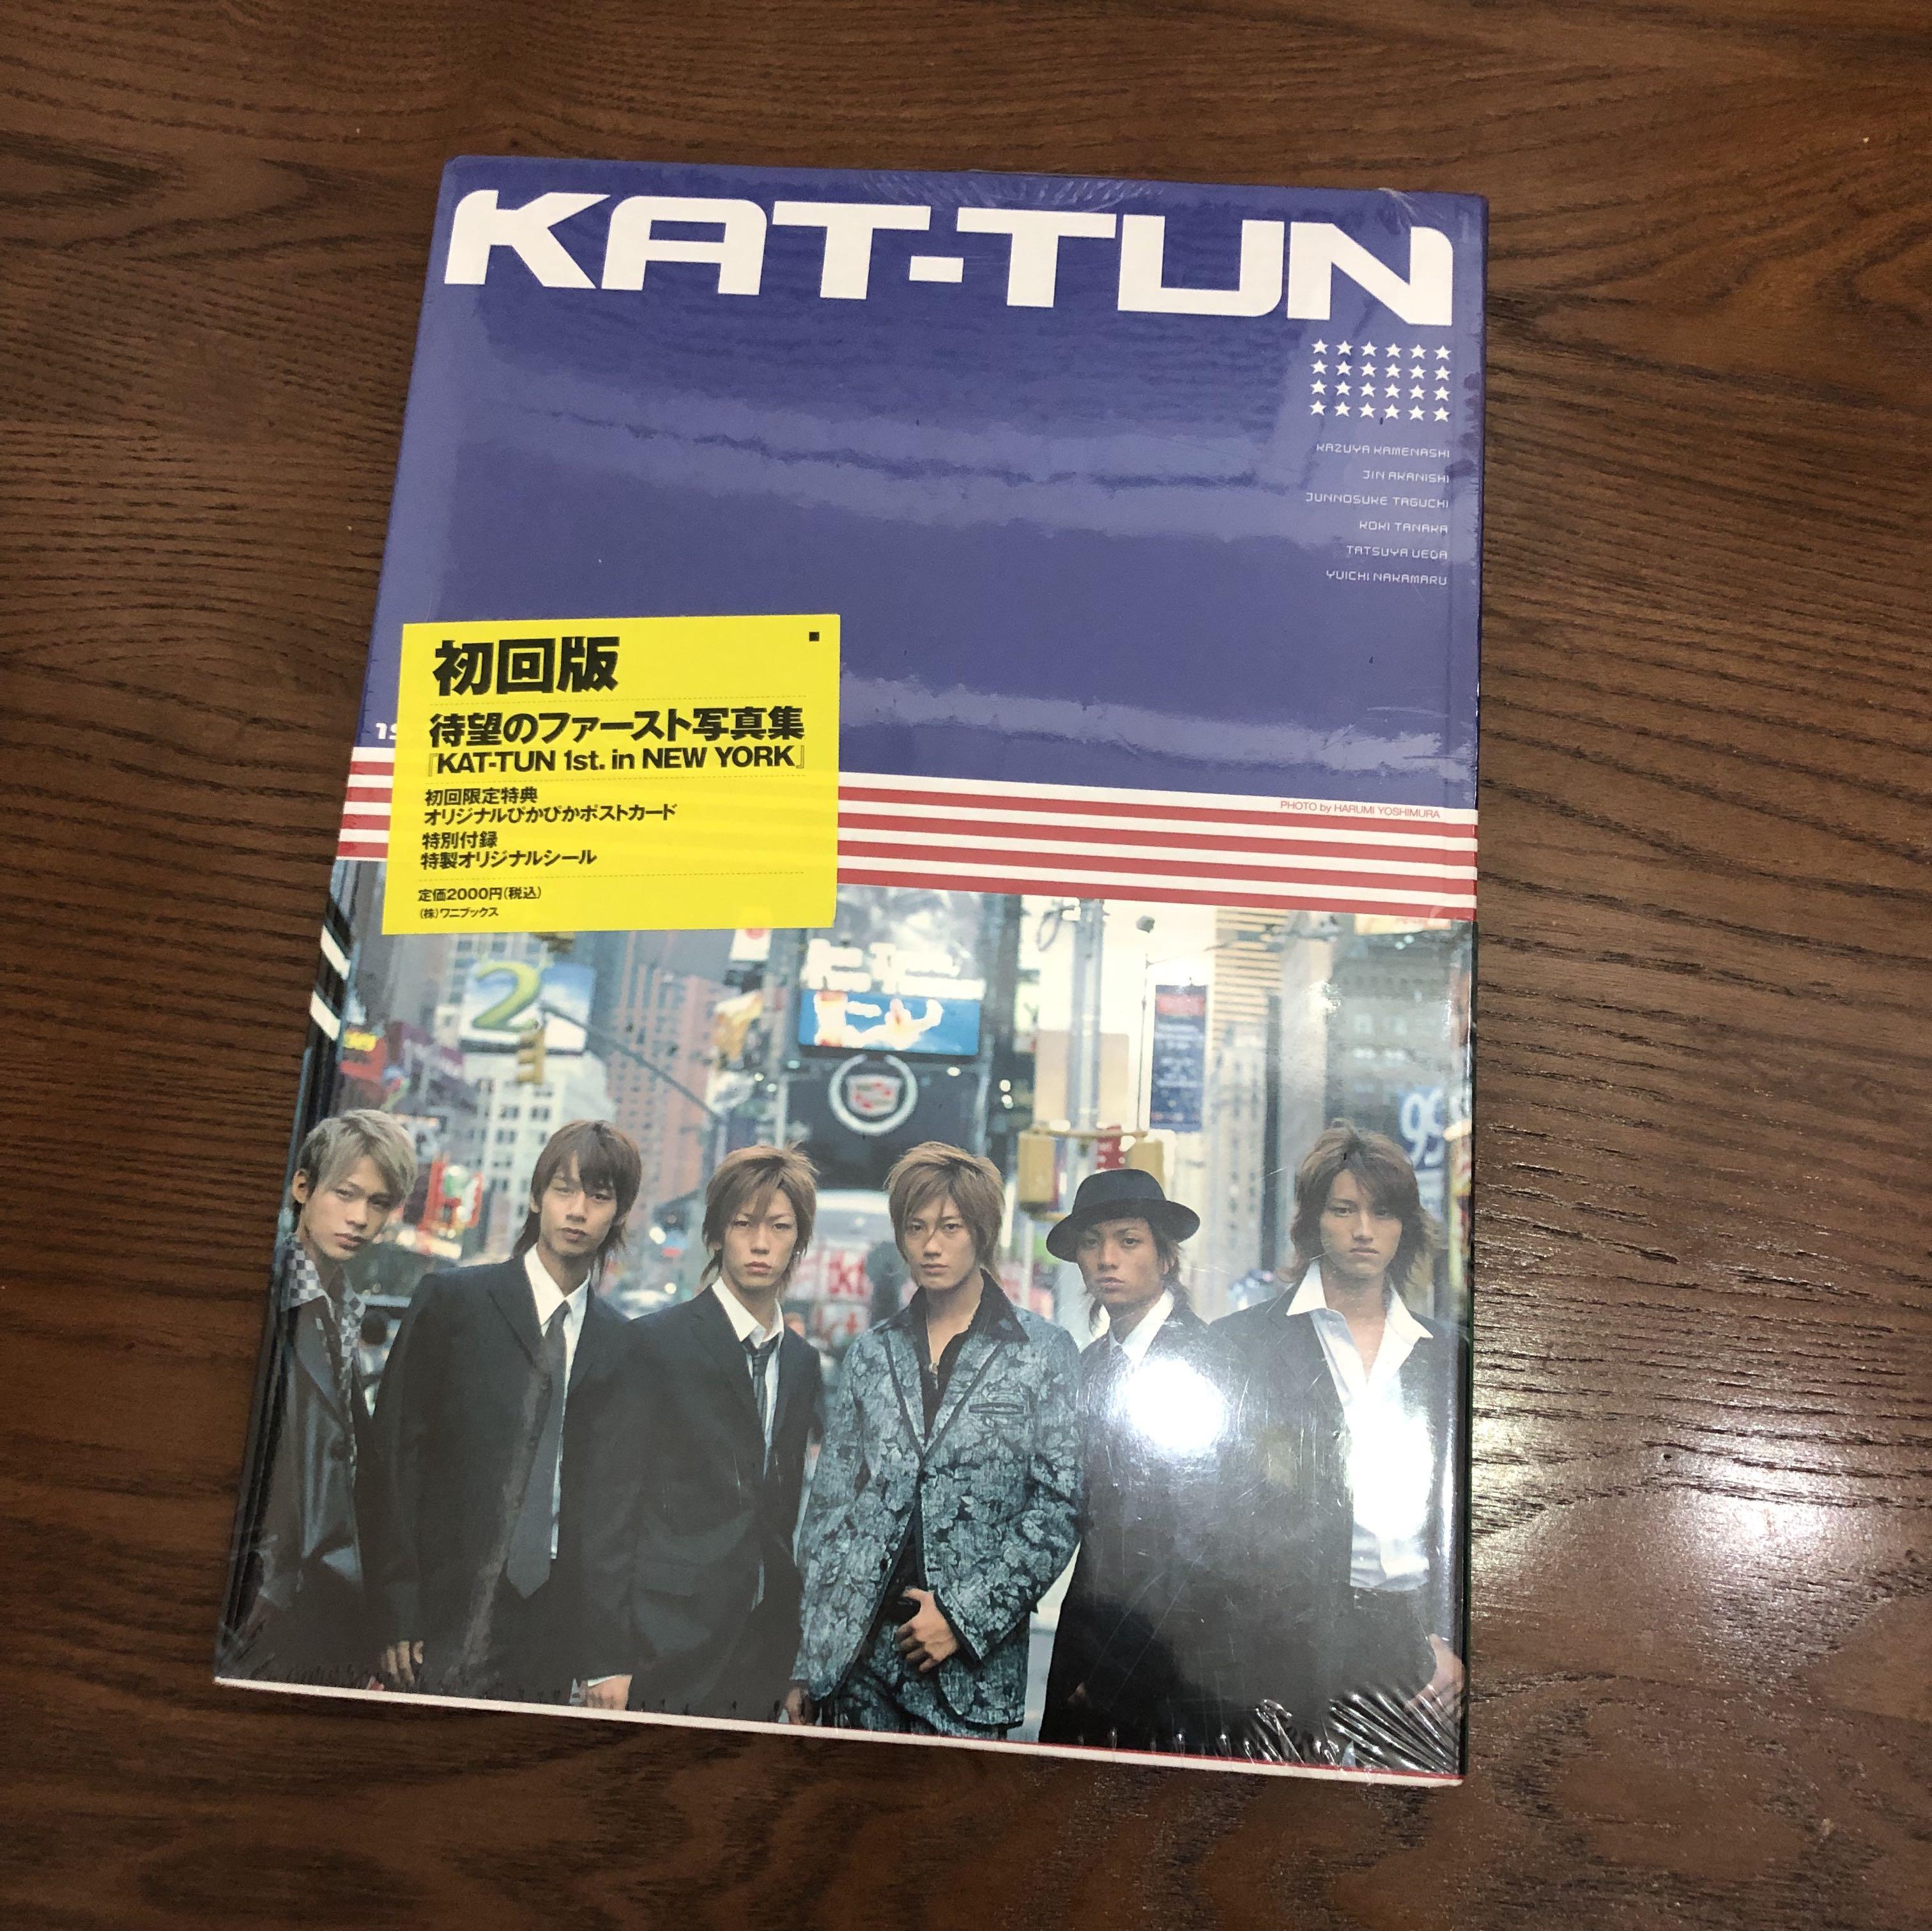 全新未開封)KAT-TUN 寫真1st. in NEW YORK 龜梨和也赤西仁上田龍也中丸